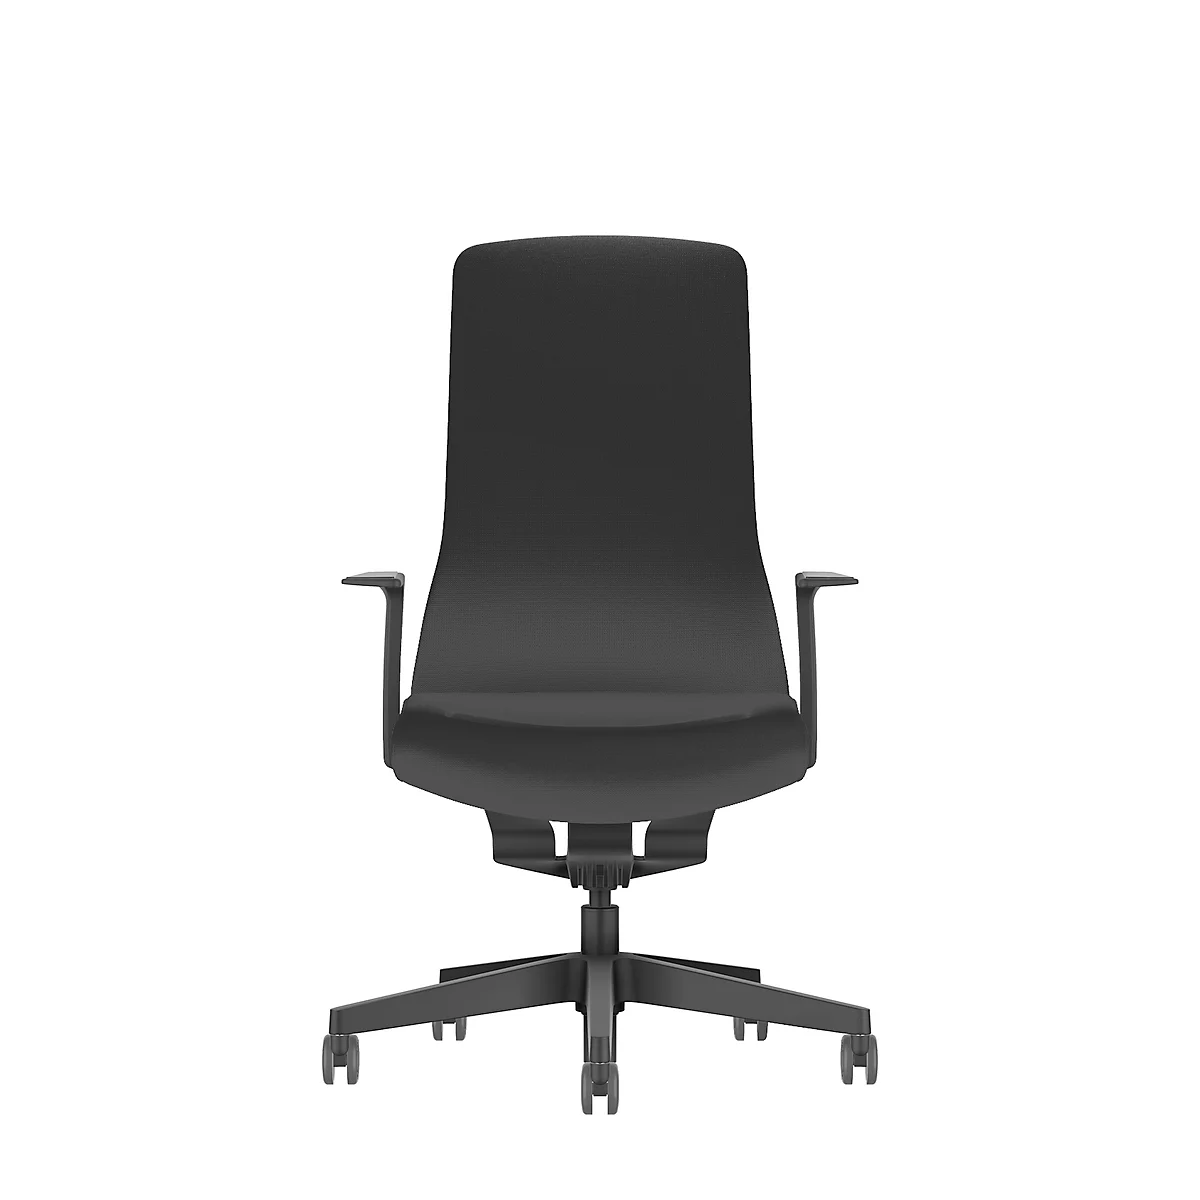 Interstuhl Bürostuhl PUREis3, feste Armlehnen, 3D-Auto-Synchronmechanik, Muldensitz, Polster-Netzrücken, schwarz/schwarz